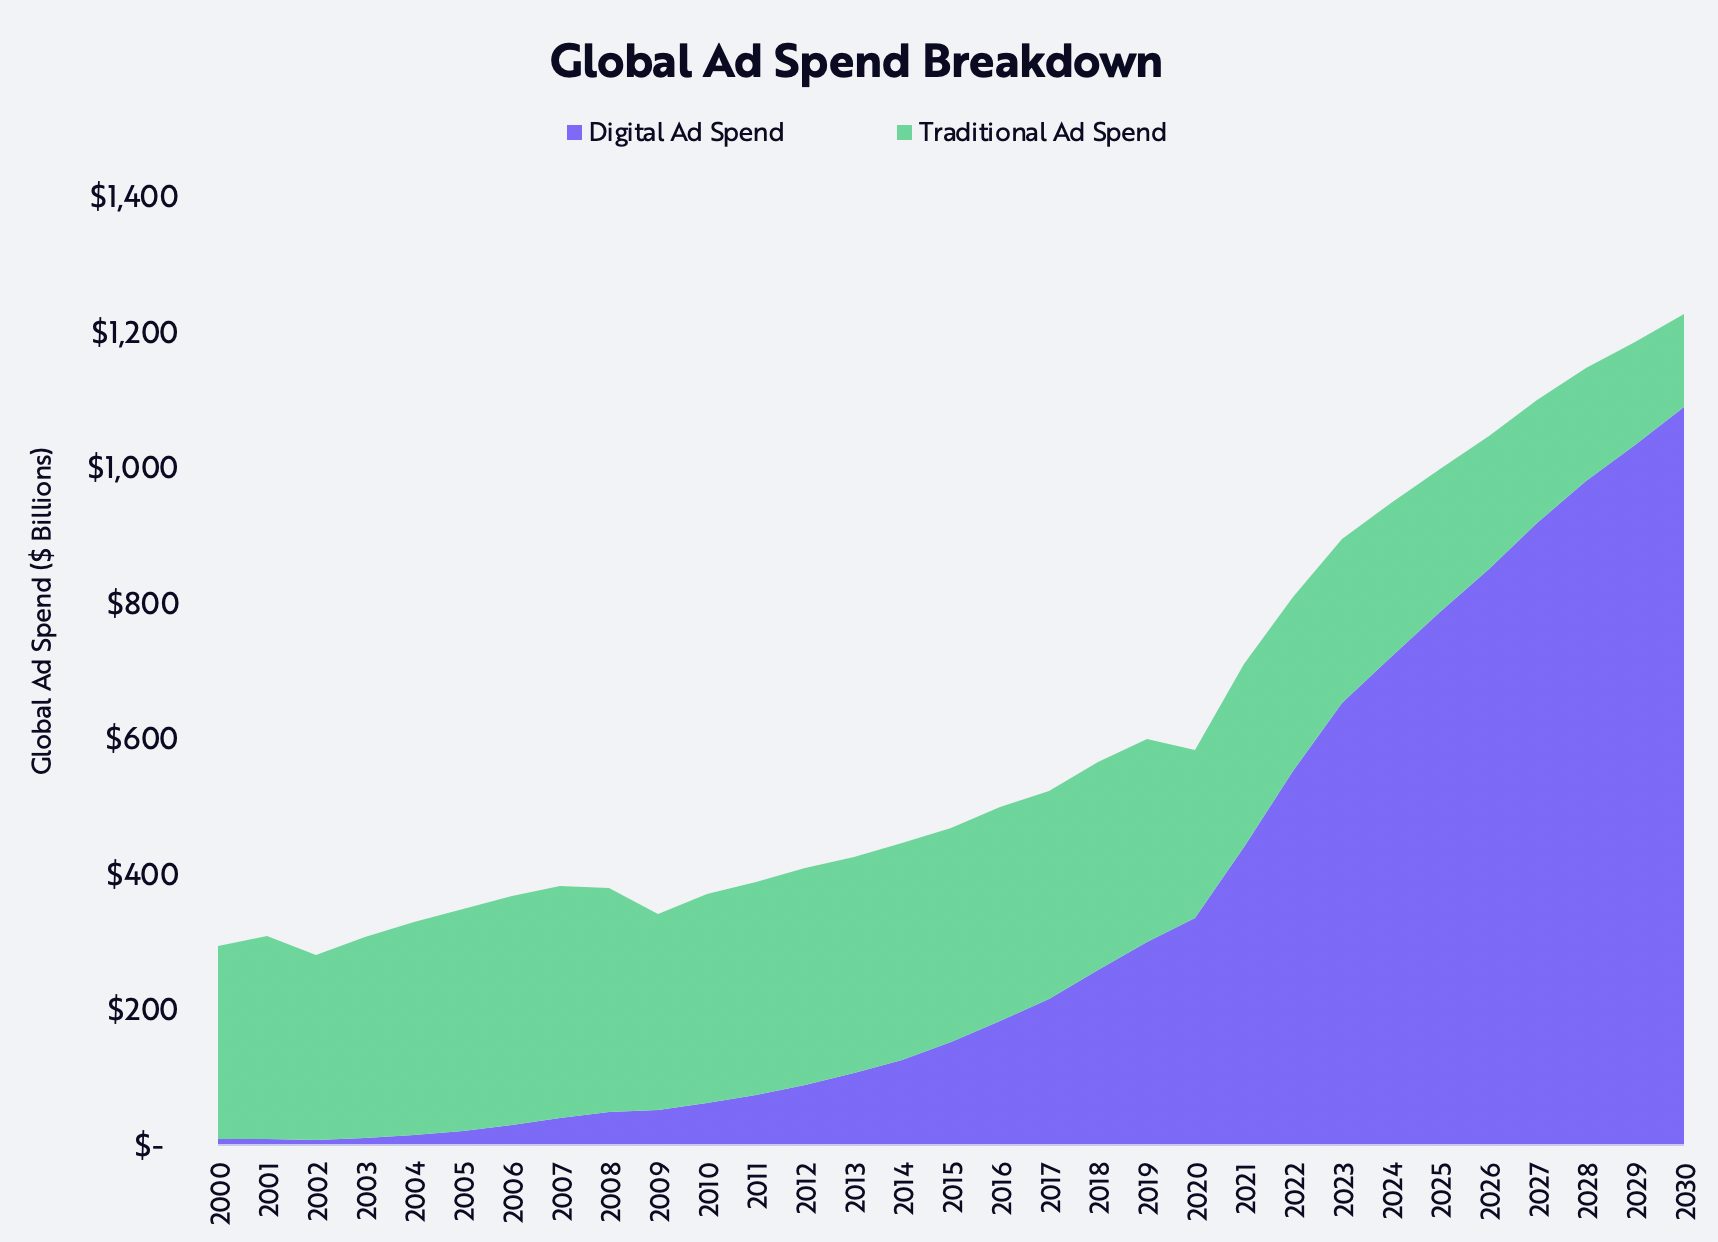 ARK Digital Advertising Global Spend